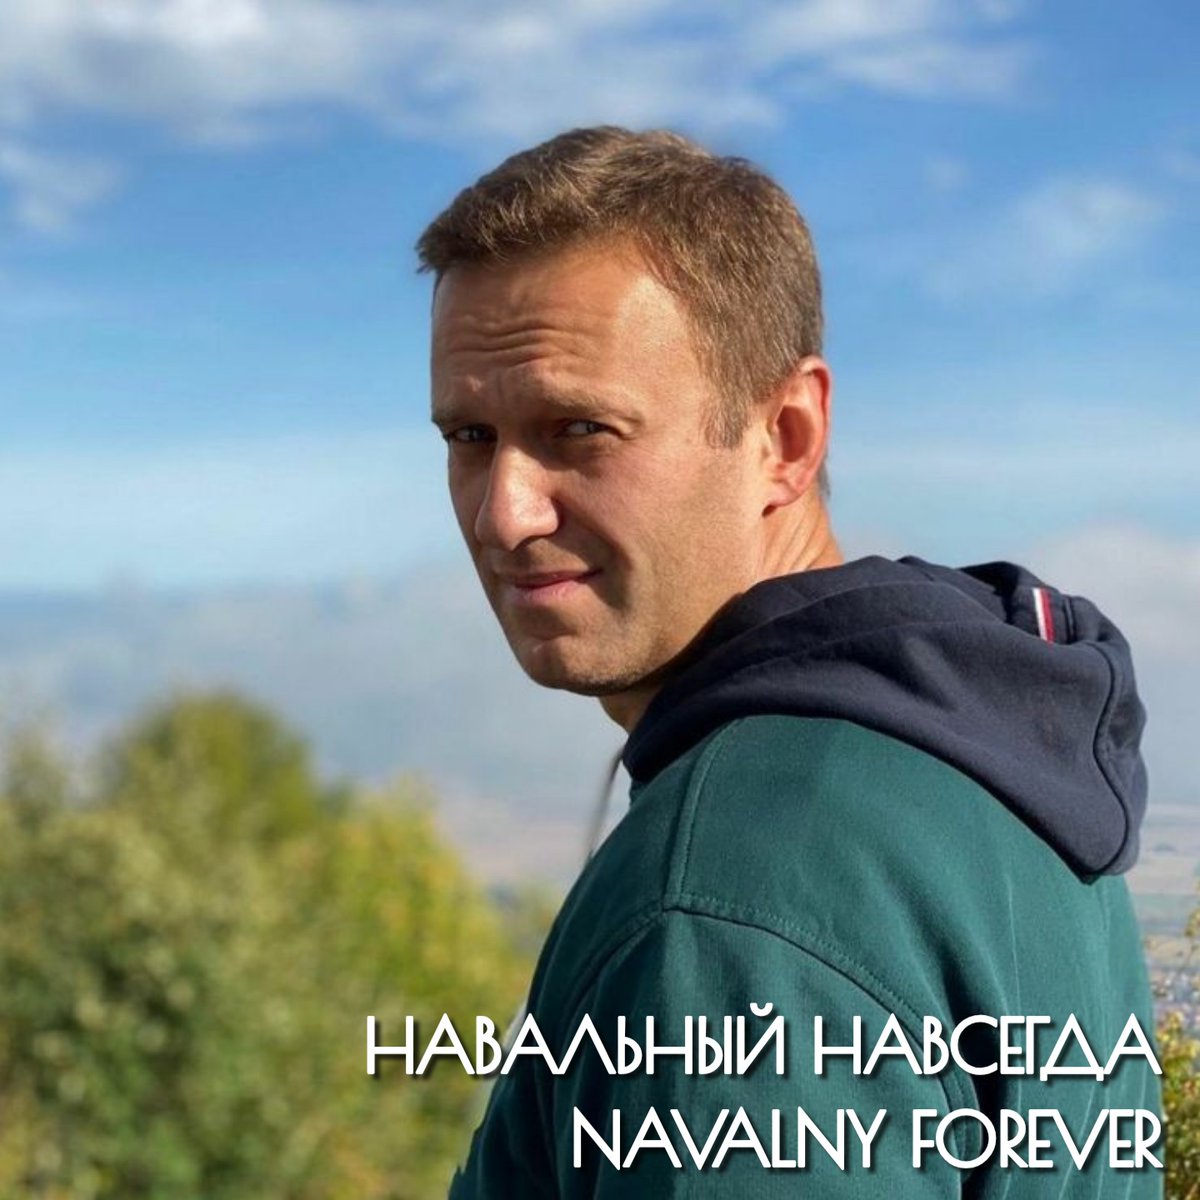 Спасибо тебе за всё Алексей Анатольевич, за Свет, за Добро, за Надежду.
Мы никогда не забудем, сколько светлого и хорошего ты дал нам, и чего тебе это стоило.
Навальный навсегда!
#НавальныйНавсегда
#NavalnyForever